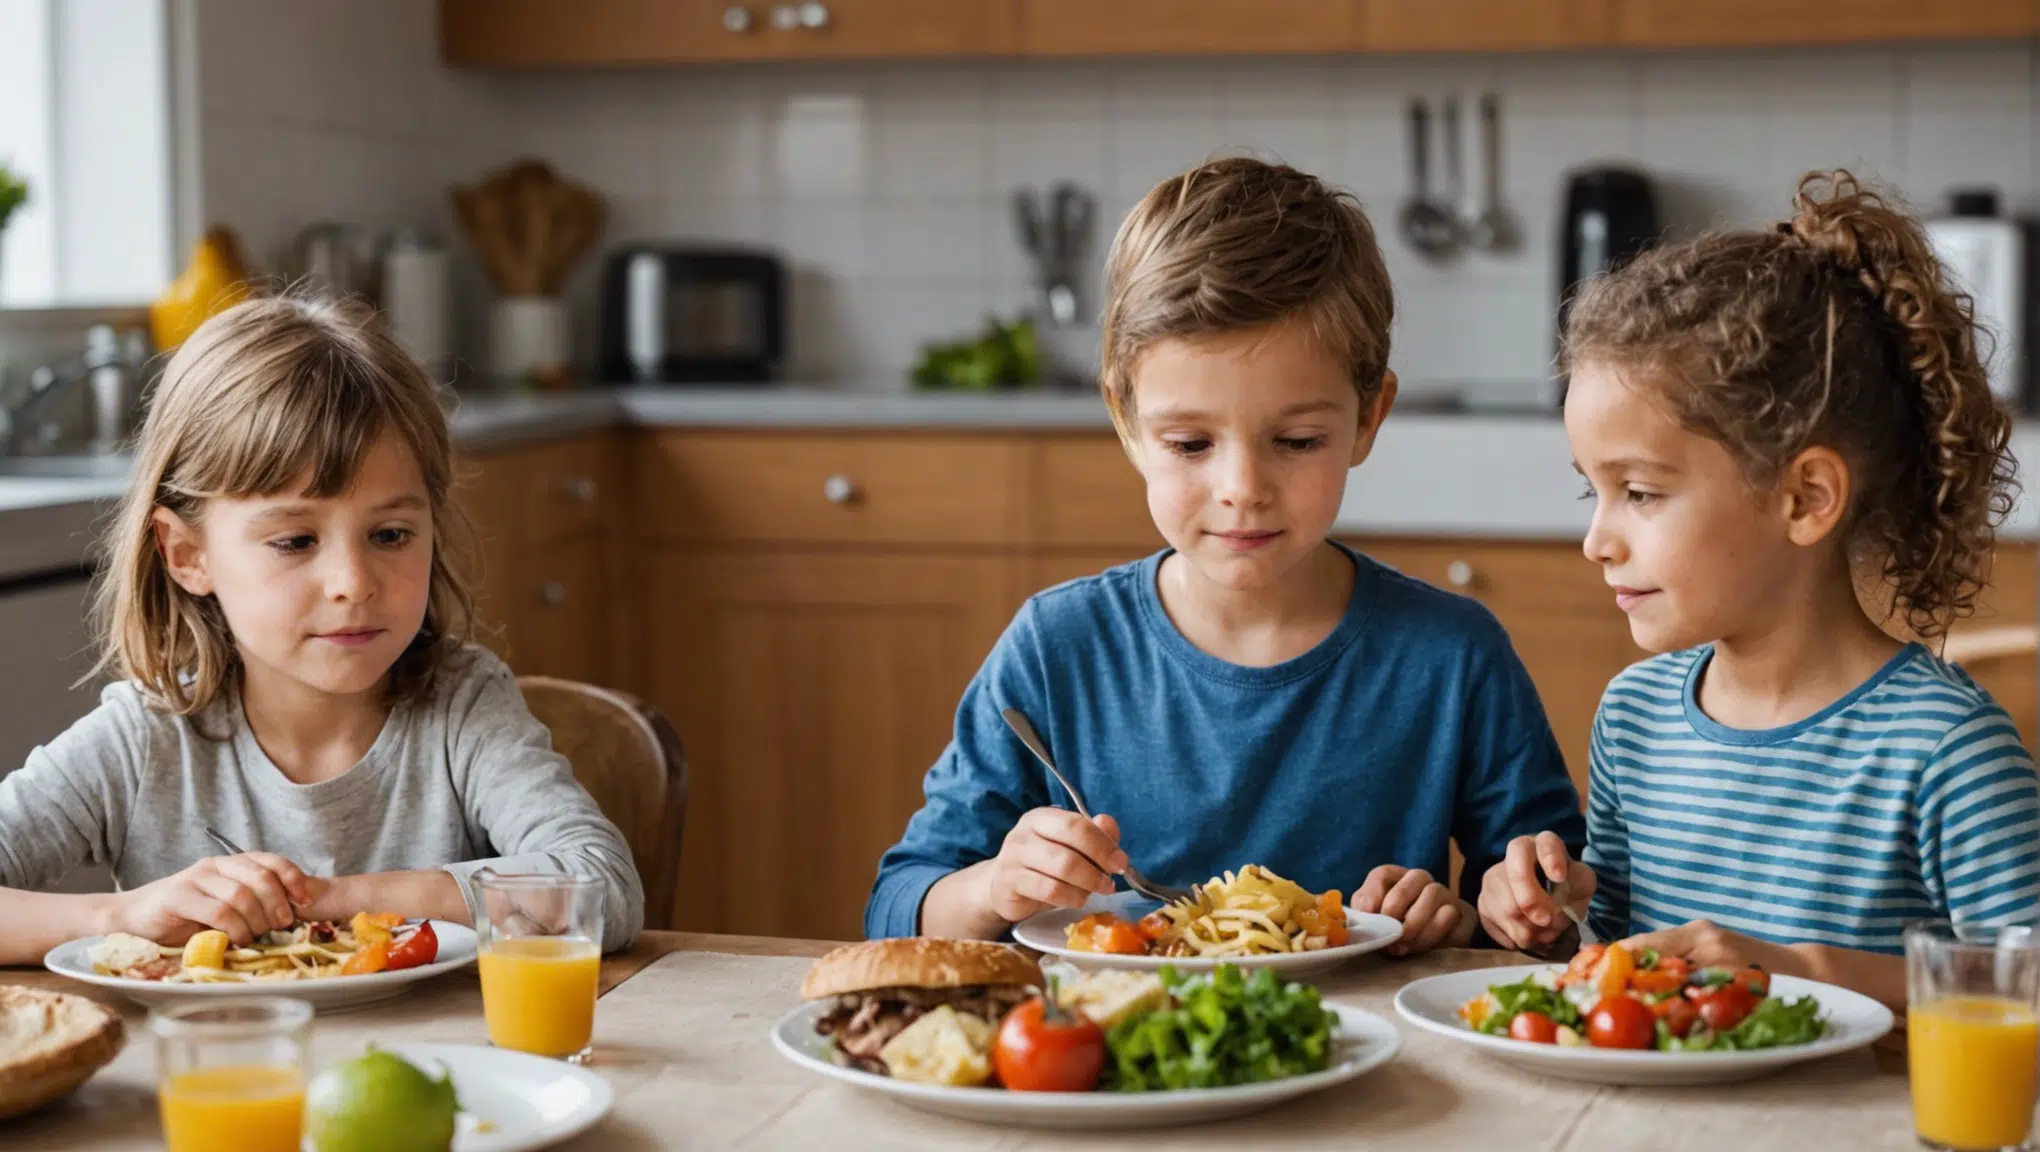 découvrez des astuces pour impliquer les enfants dans la préparation des repas et les initier à une alimentation saine et équilibrée. des idées ludiques et éducatives pour cuisiner en famille.